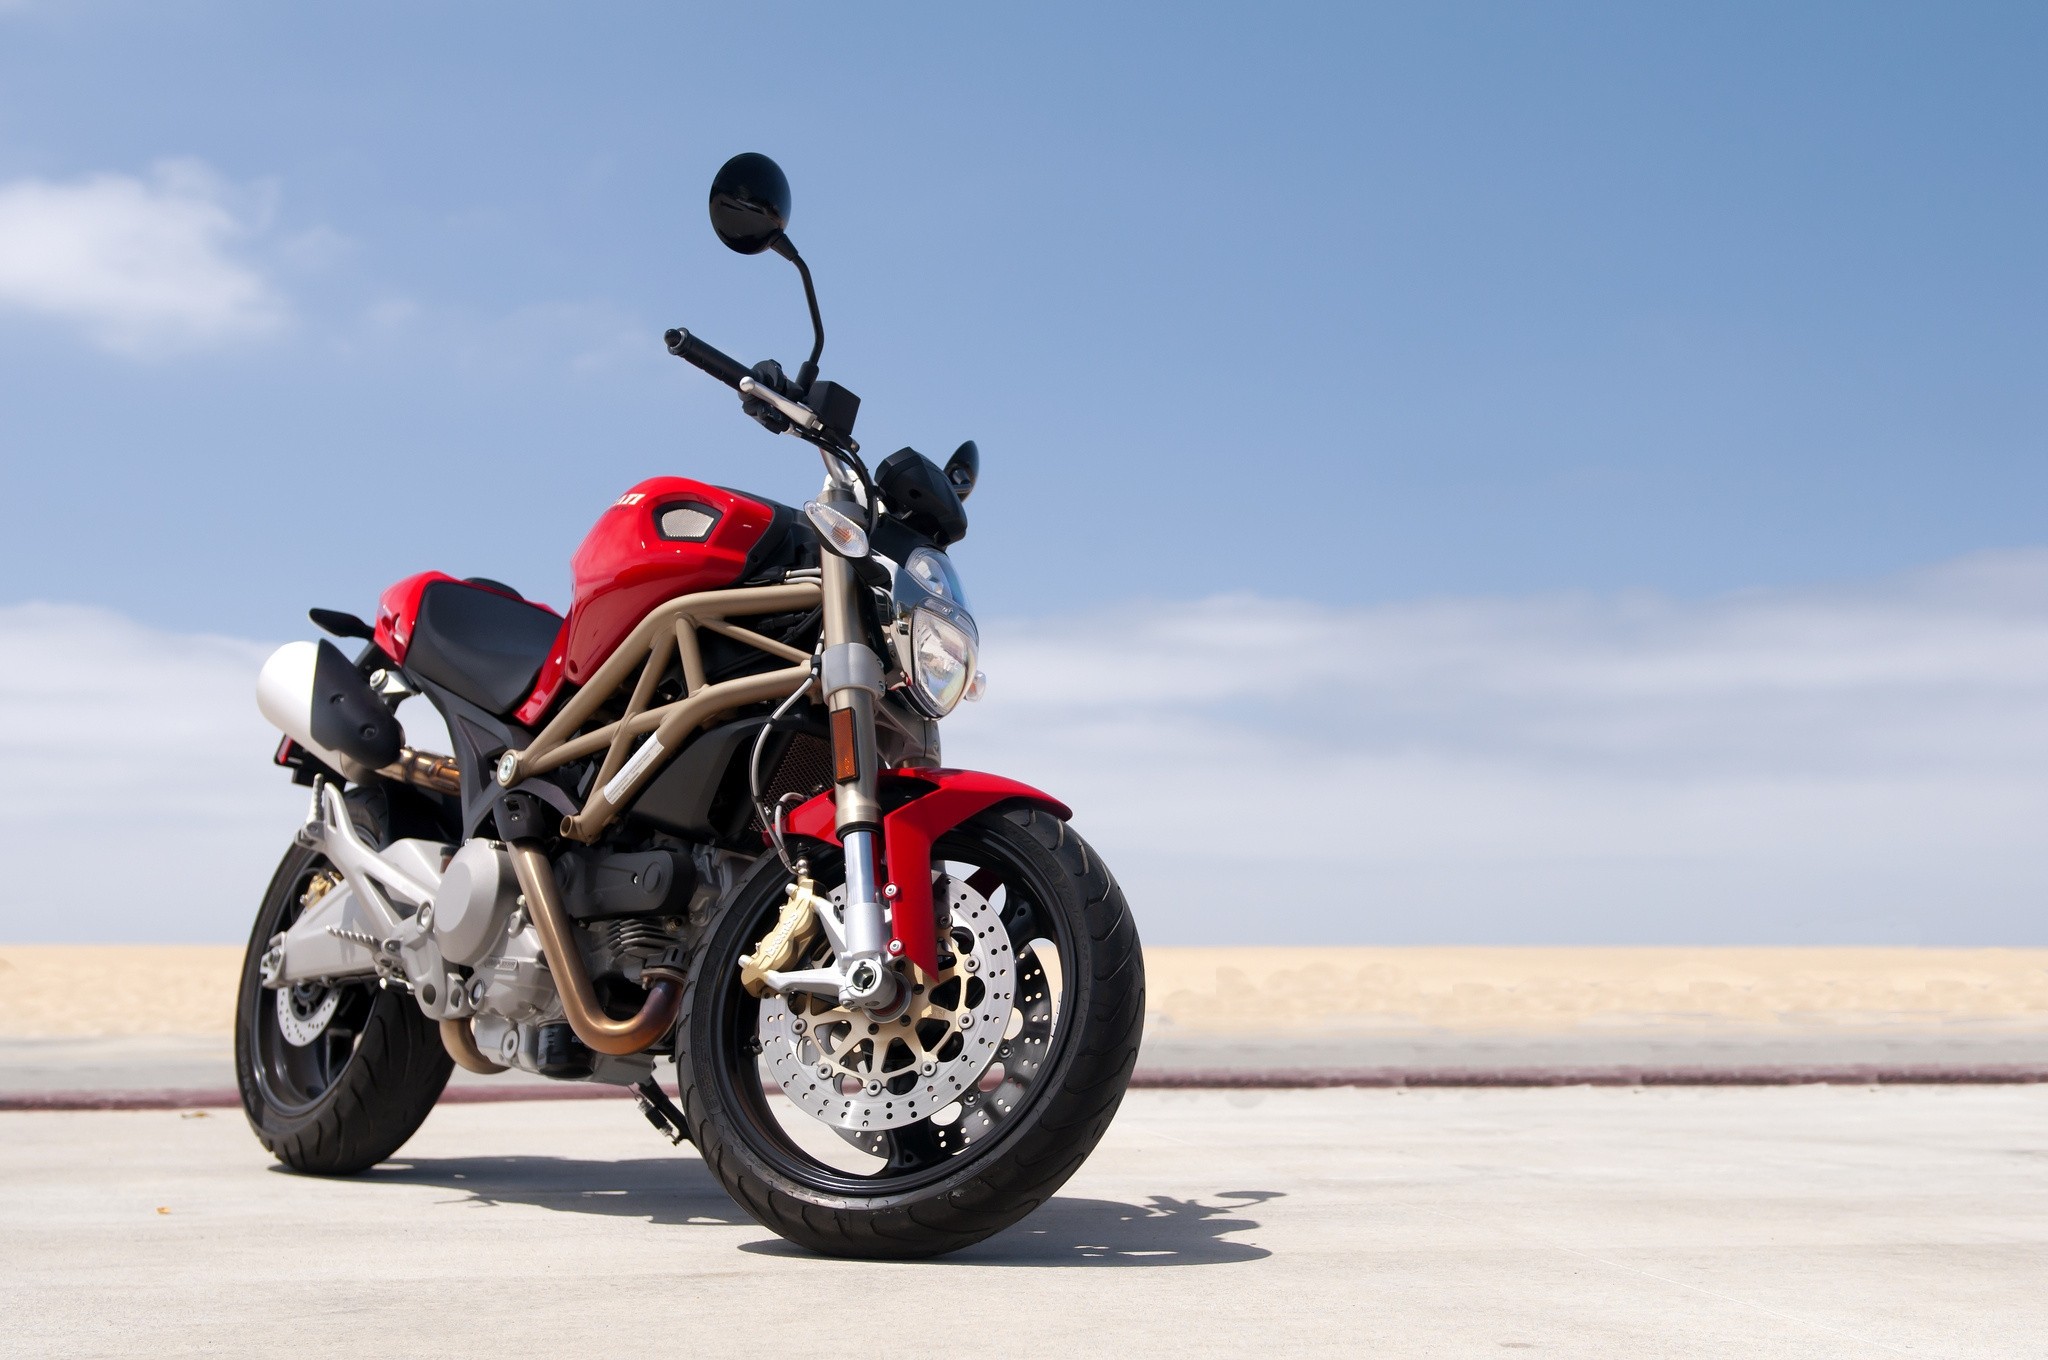 Descarga gratuita de fondo de pantalla para móvil de Motocicleta, Bicicleta, Ducati, Motocicletas.